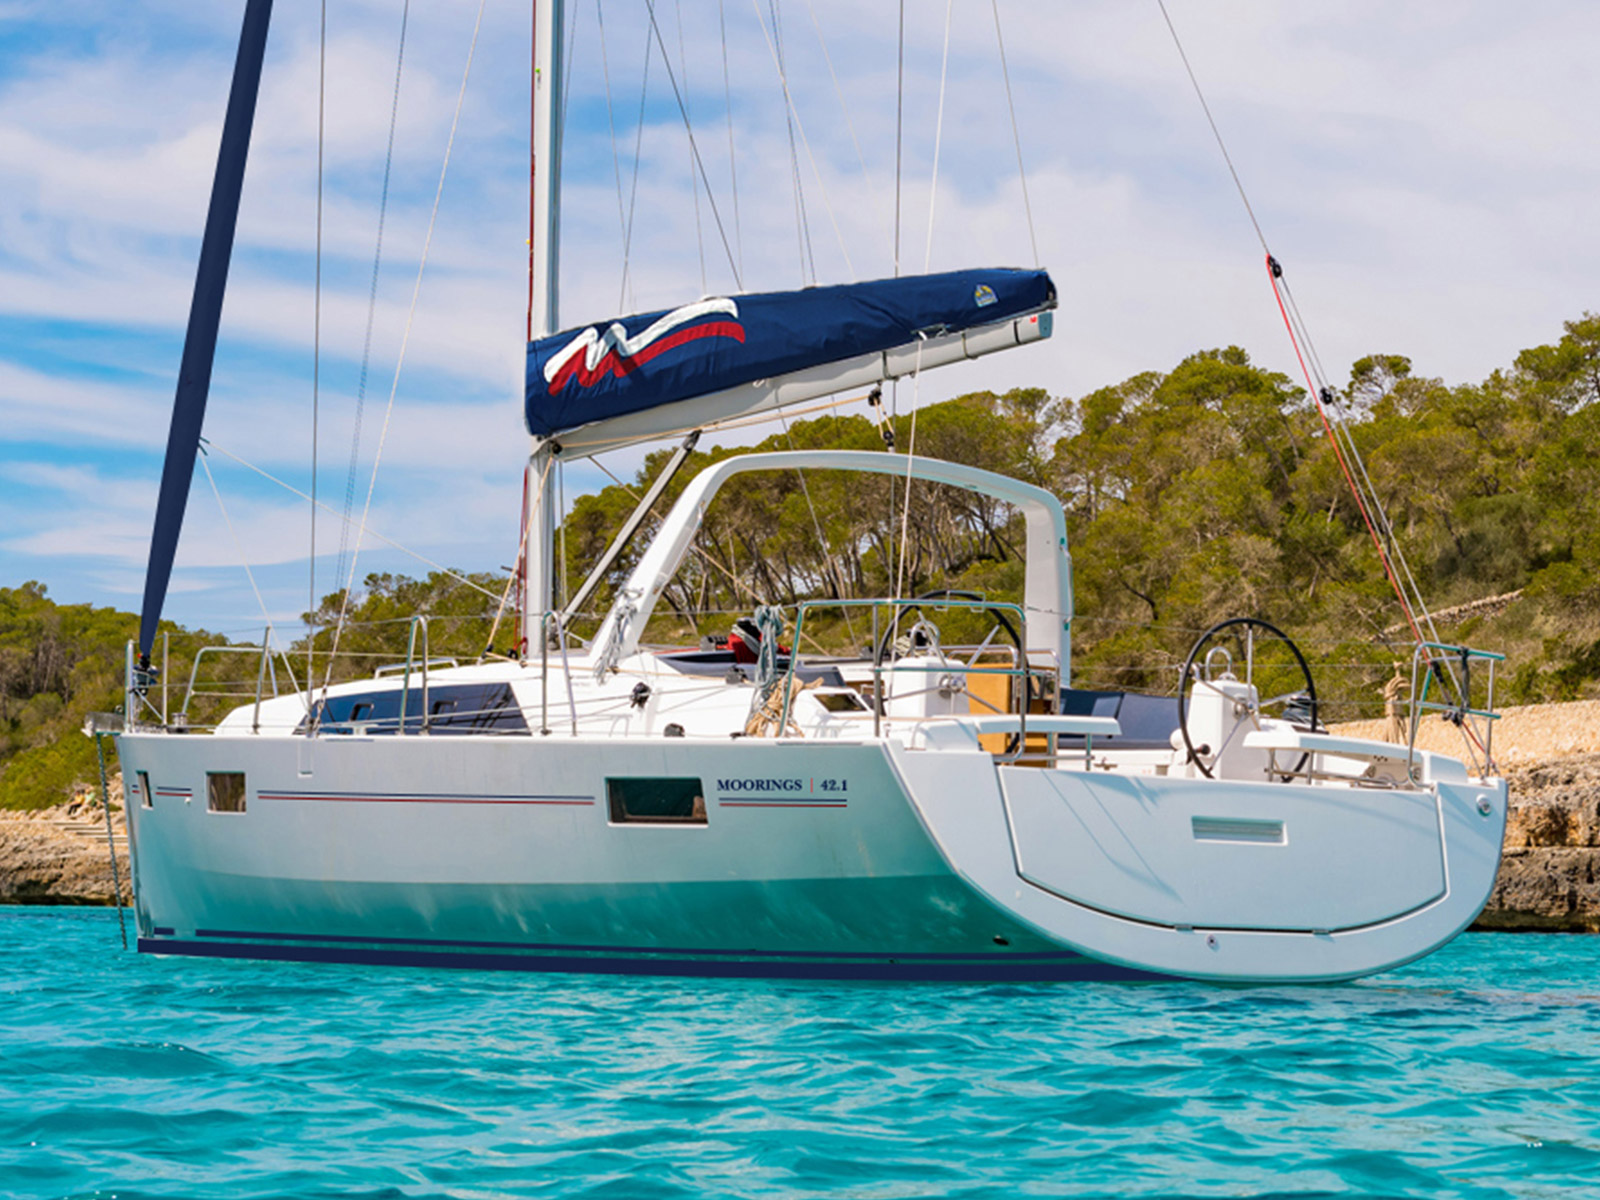 Yacht charter Moorings 42.1 - Croatia, Central Dalmatia, Marina